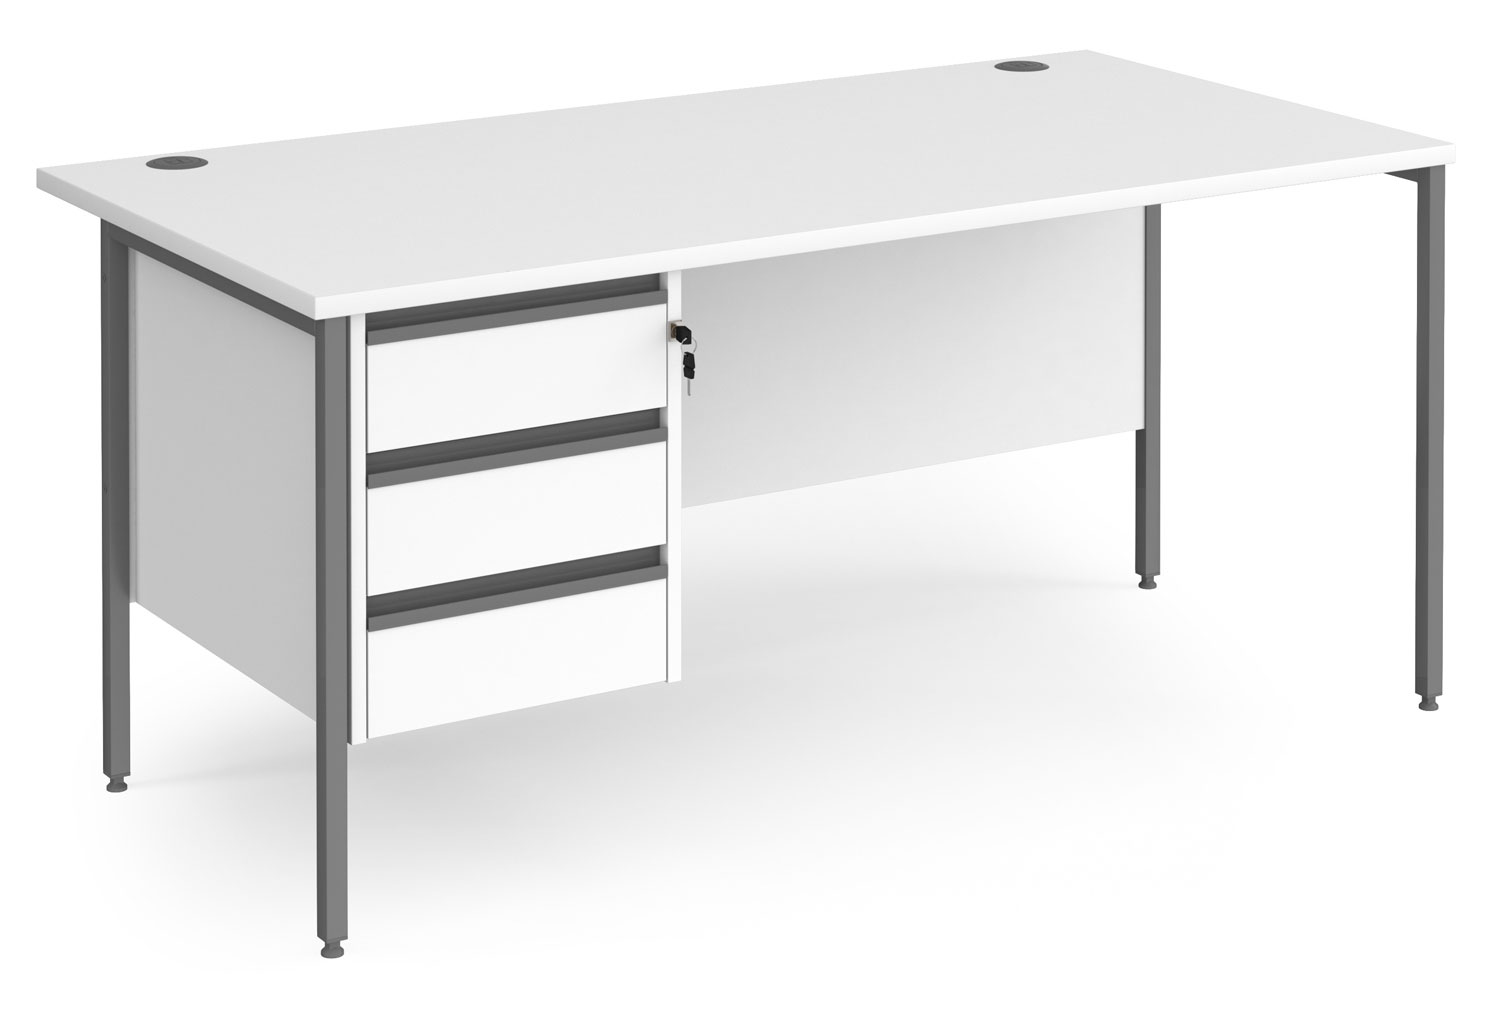 Value Line Classic+ Rectangular H-Leg Office Desk 3 Drawers (Graphite Leg), 160wx80dx73h (cm), White, Fully Installed